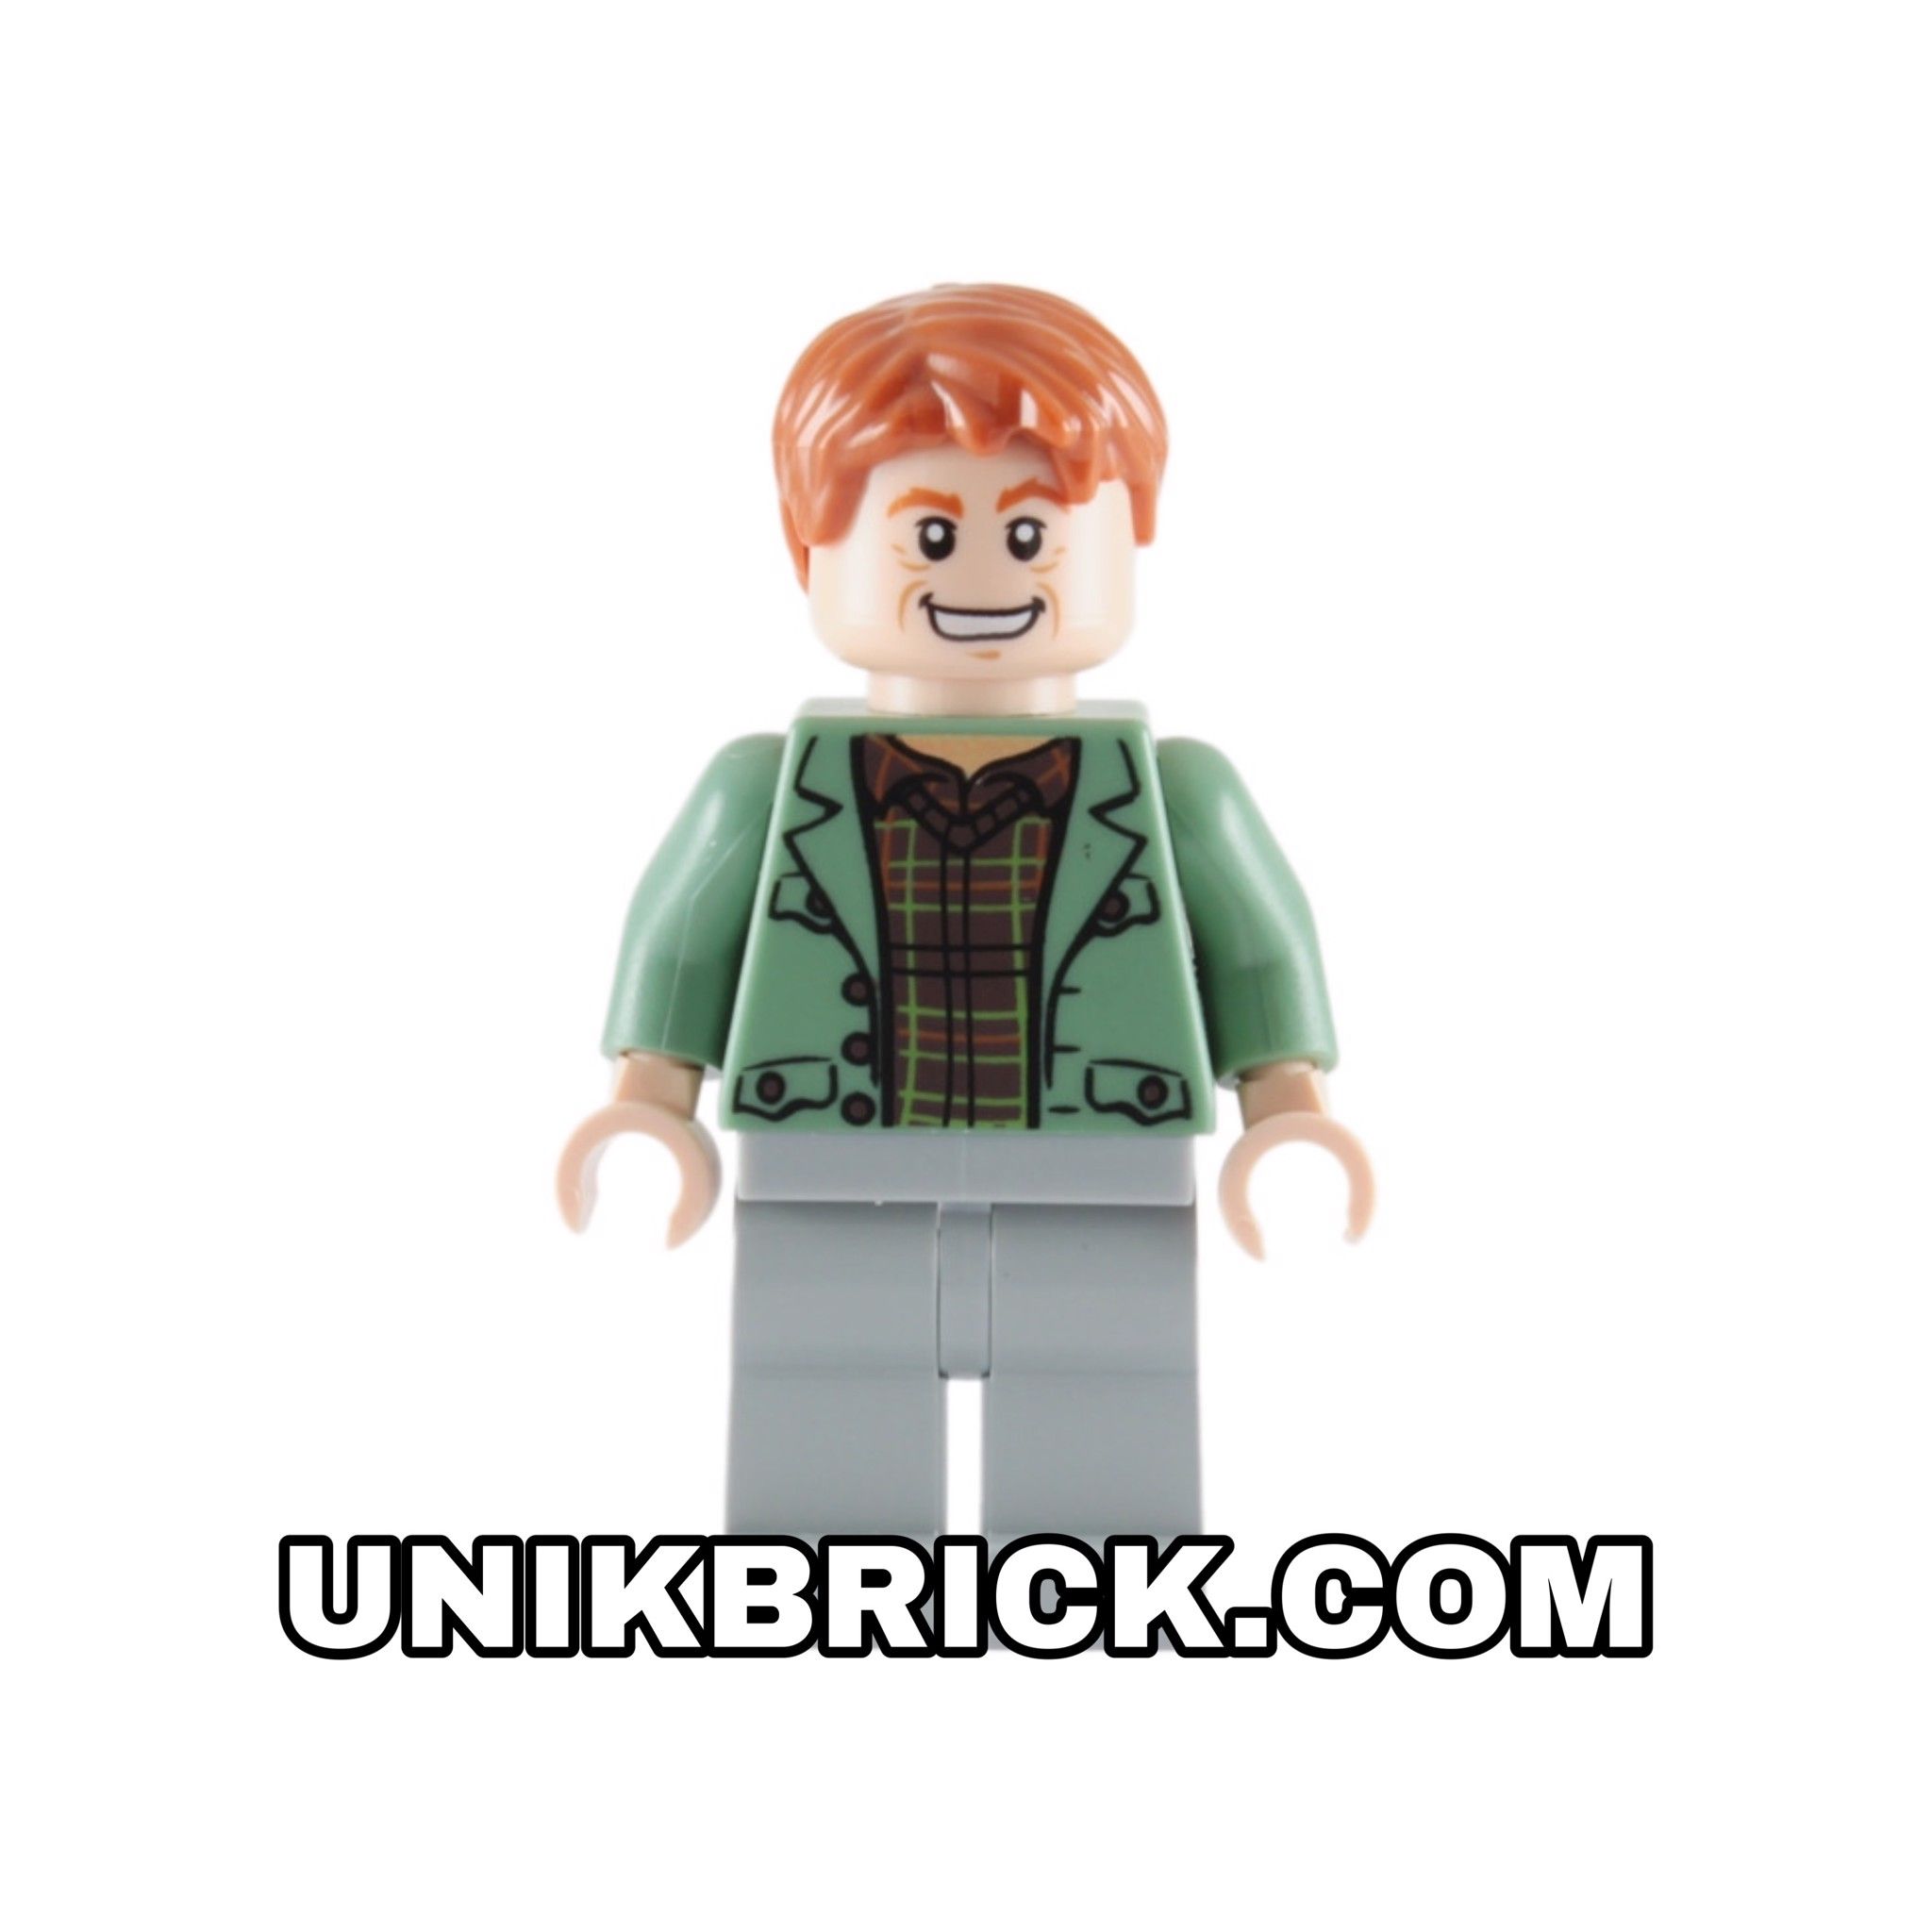 [ORDER ITEMS] LEGO Arthur Weasley Sand Green